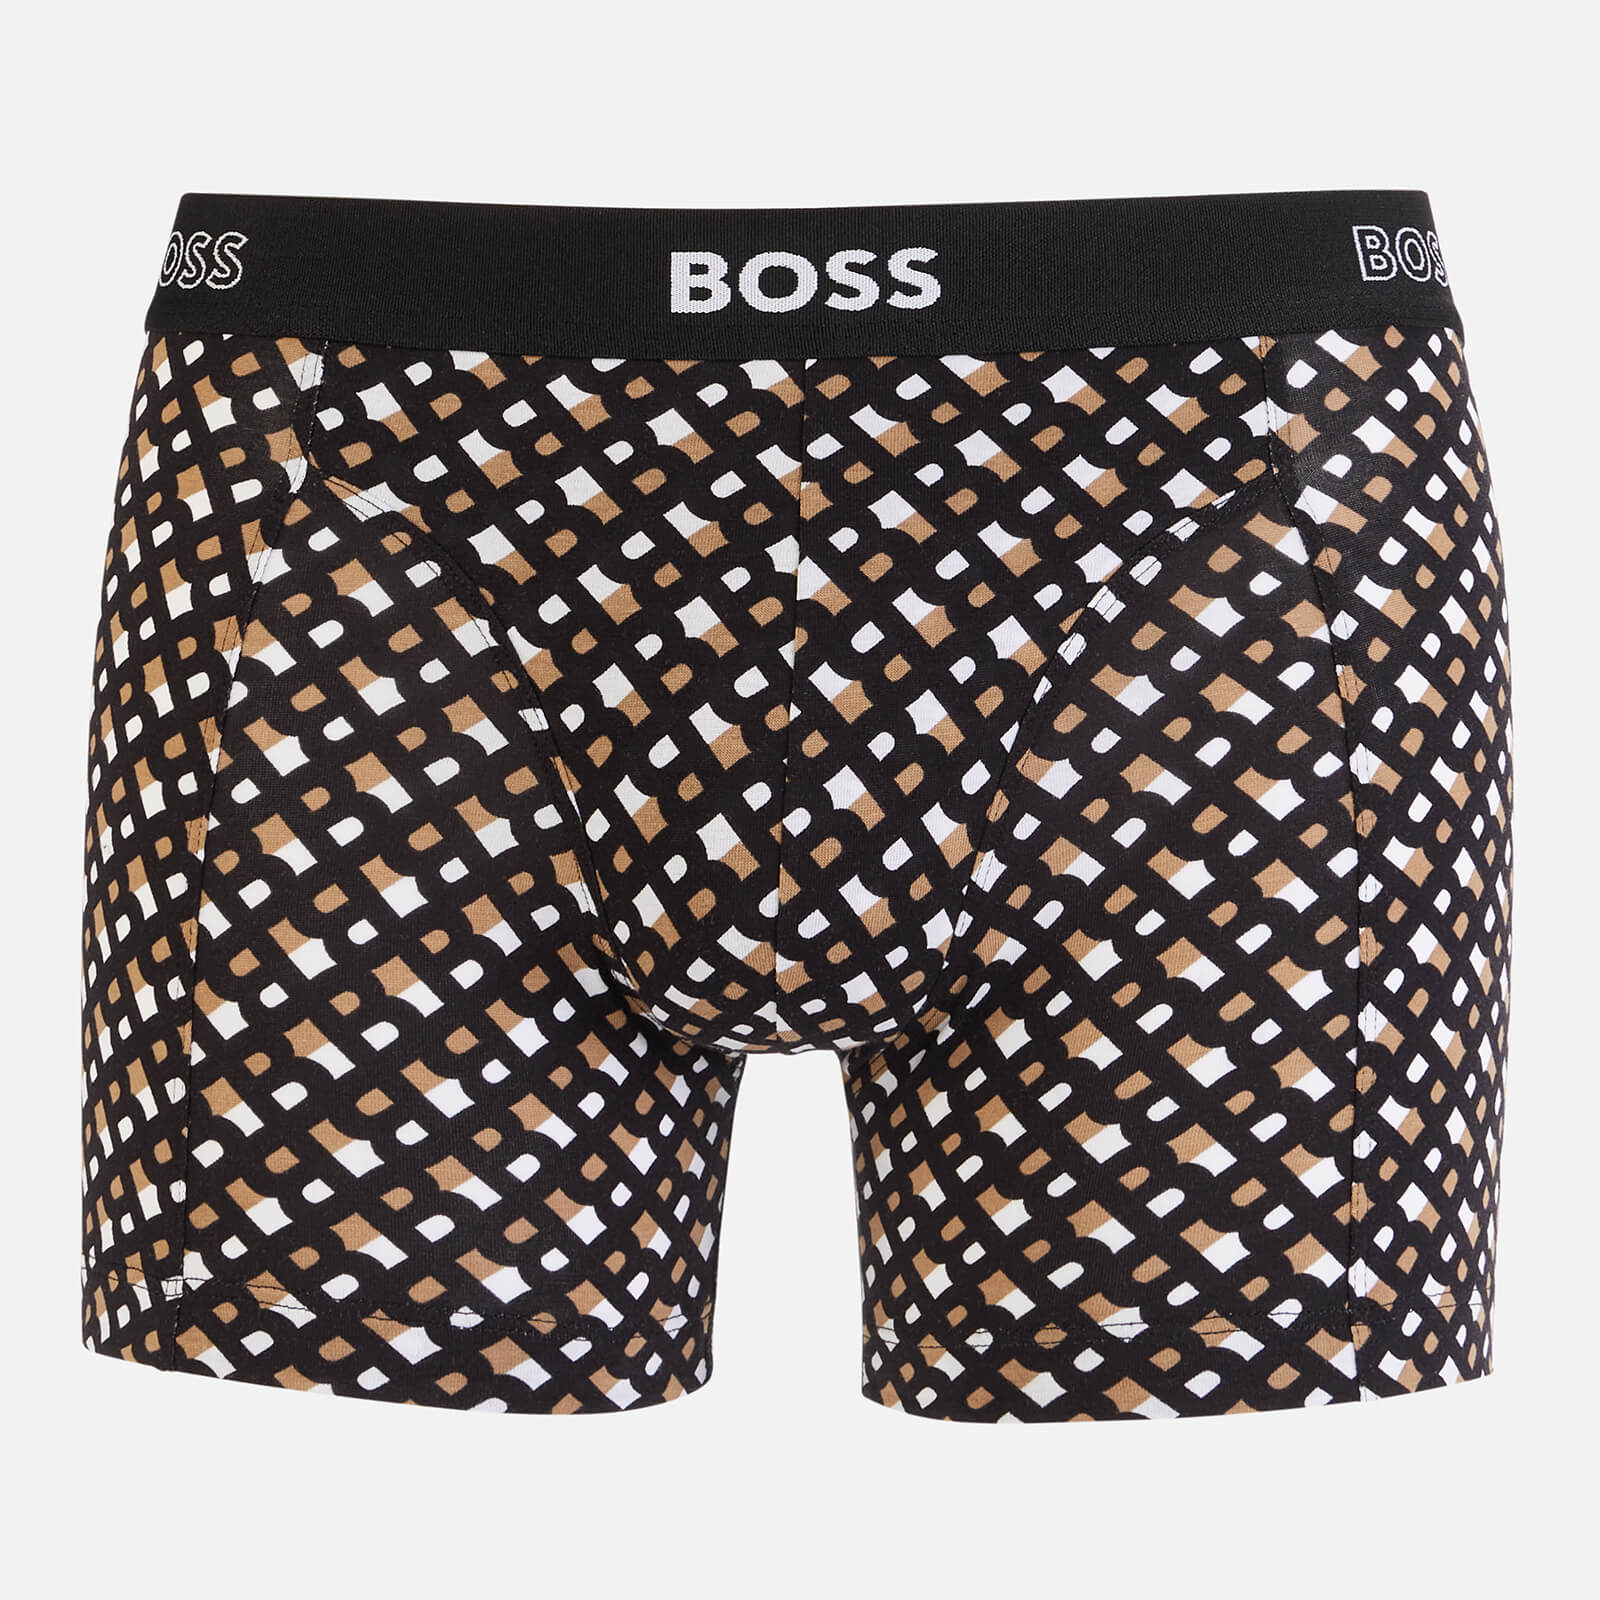 BOSS Bodywear Men's 2-Pack Print Boxer Briefs - Black - S